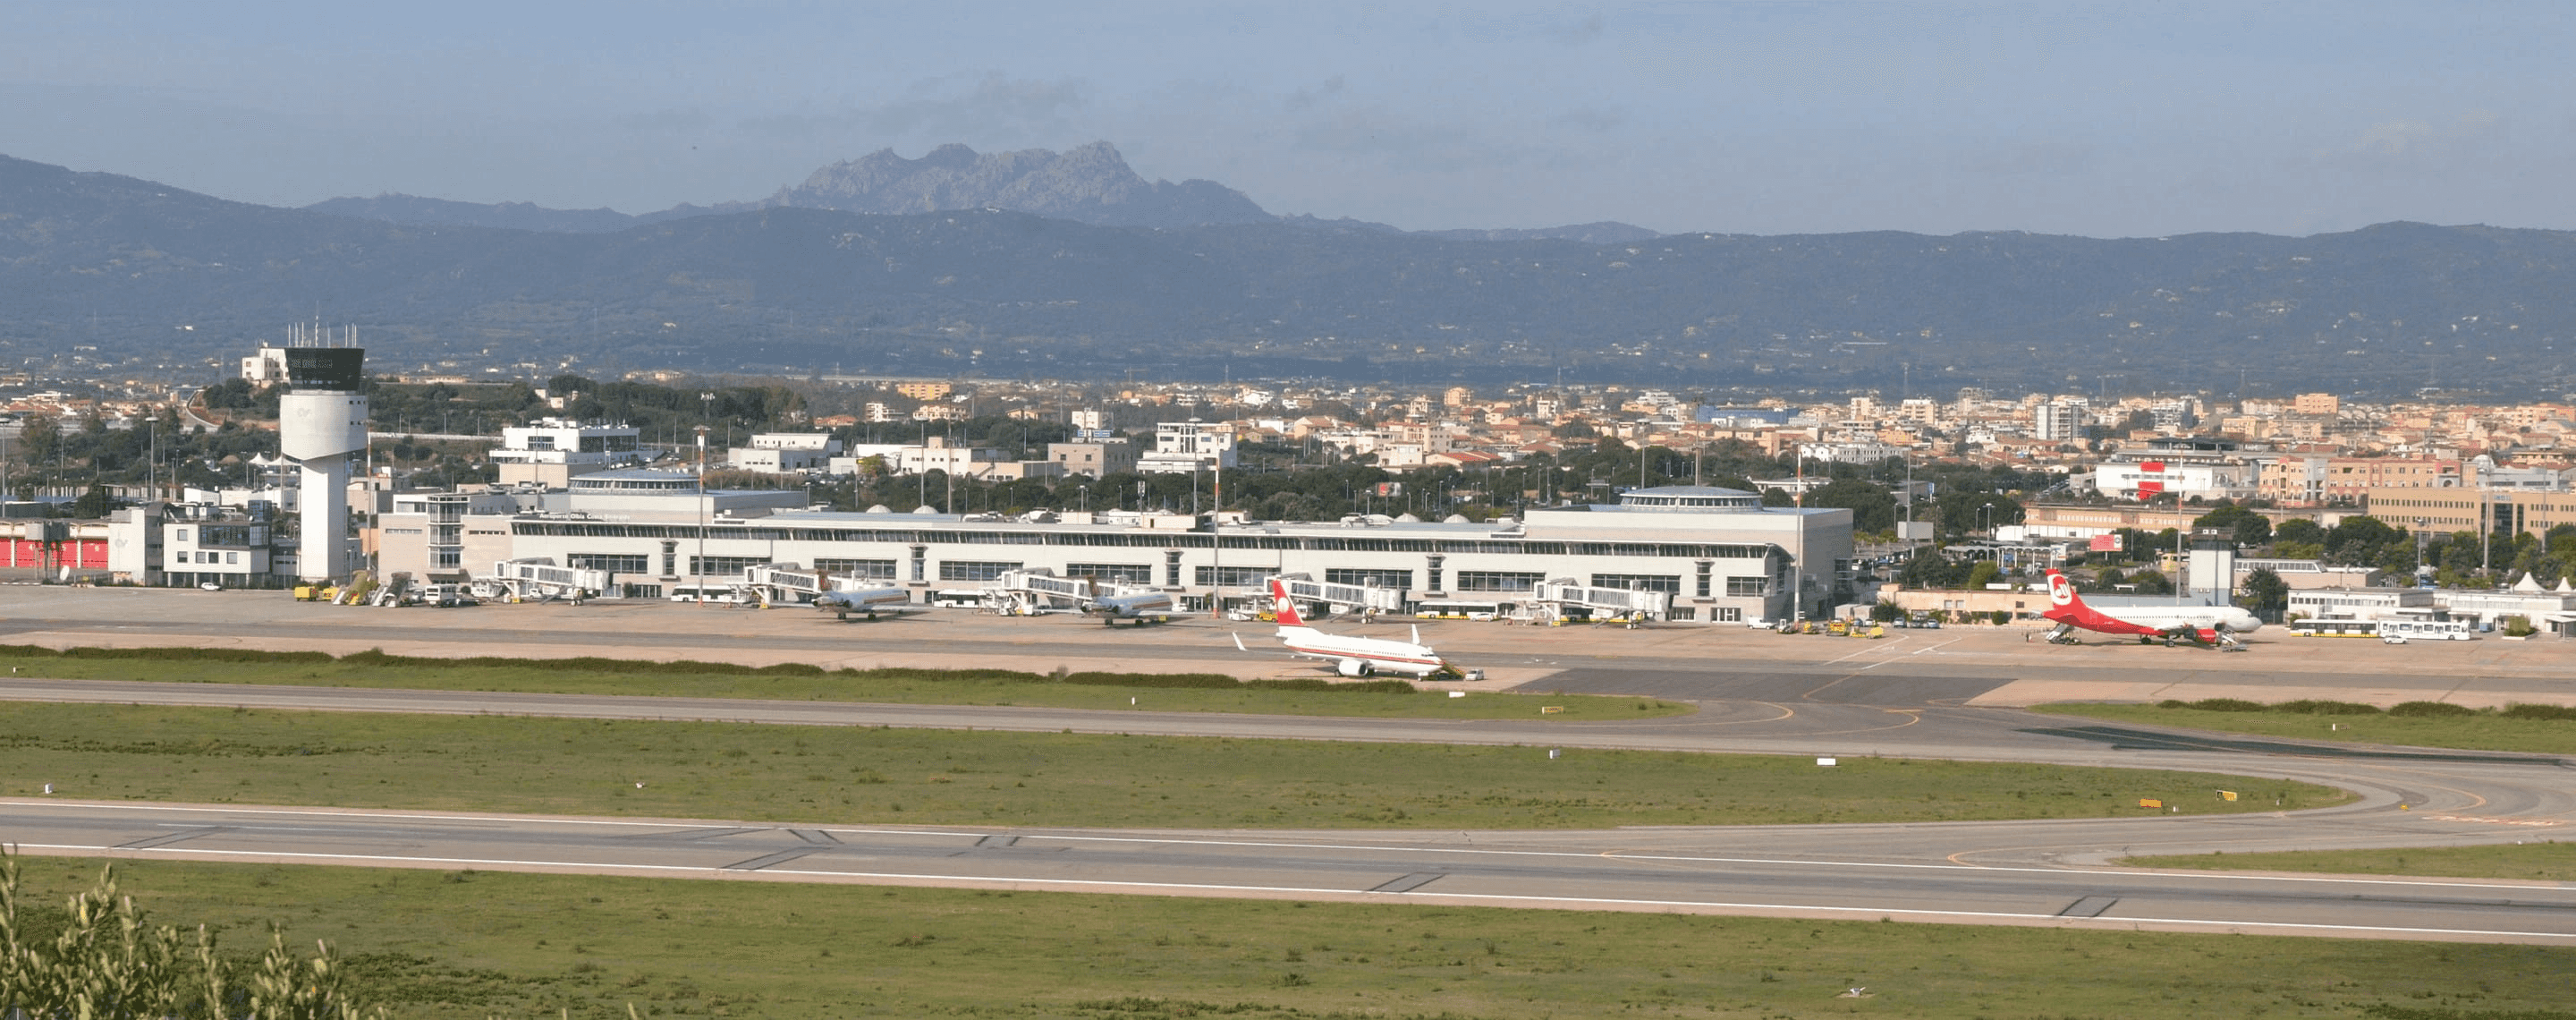 Flughafen Olbia auf Sardinien